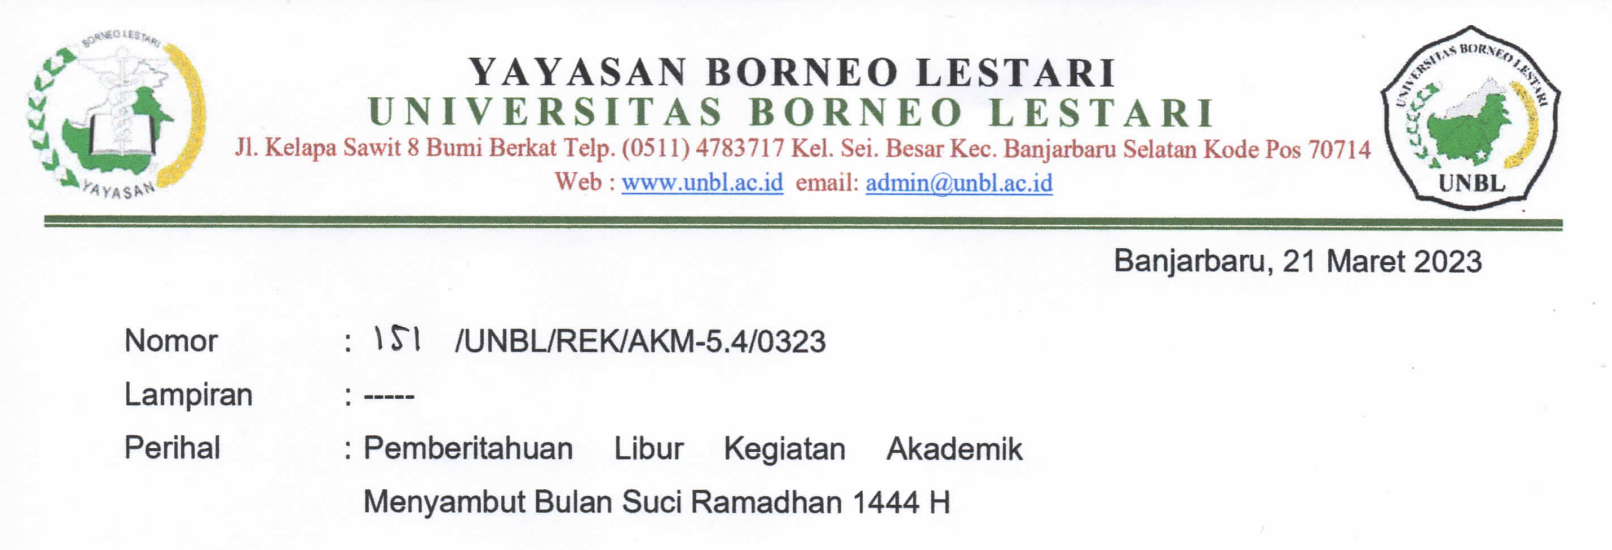 Pemberitahuan Libur Kegiatan Akademik Menyambut Bulan Suci Ramadhan 1444 H – Kepada Seluruh Civitas Akademika Universitas Borneo Lestari